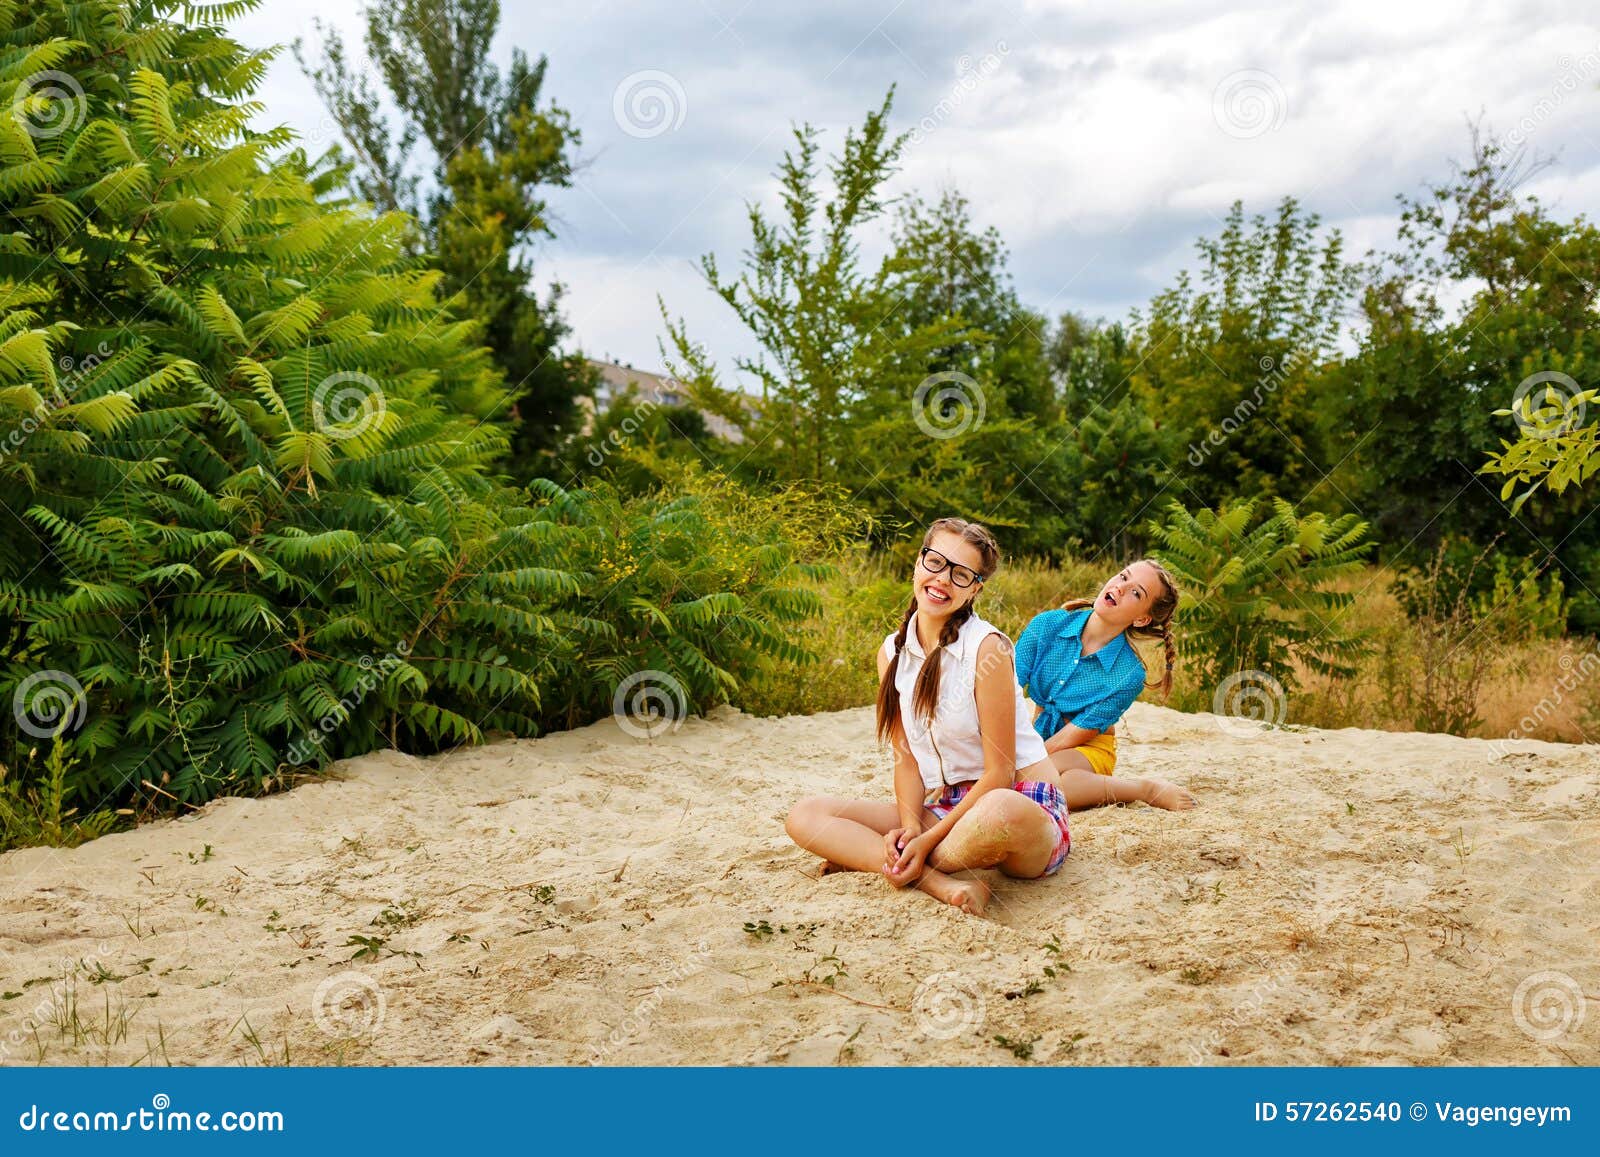 Самые лучшие подруги сидя на песке на пляже в лете паркуют Предназначенная для подростков девушка одела в шортах и рубашке На летних каникулах Концепция истинного приятельства